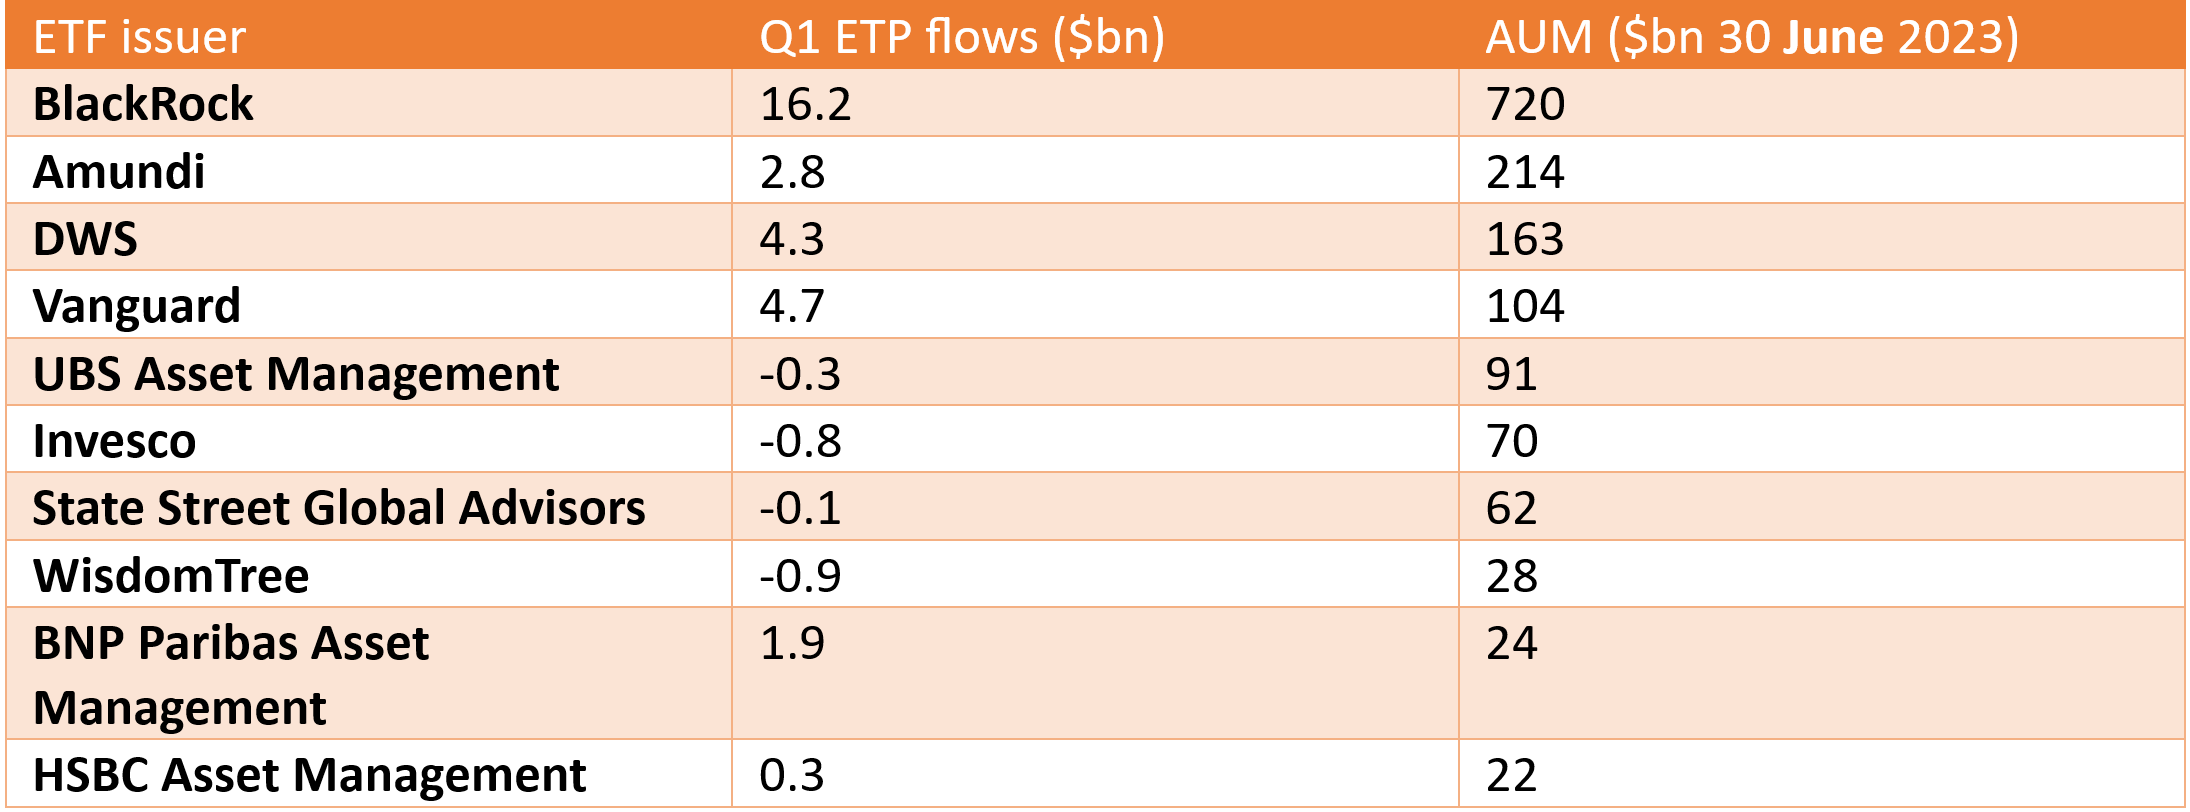 Q2 ETF issuer flows